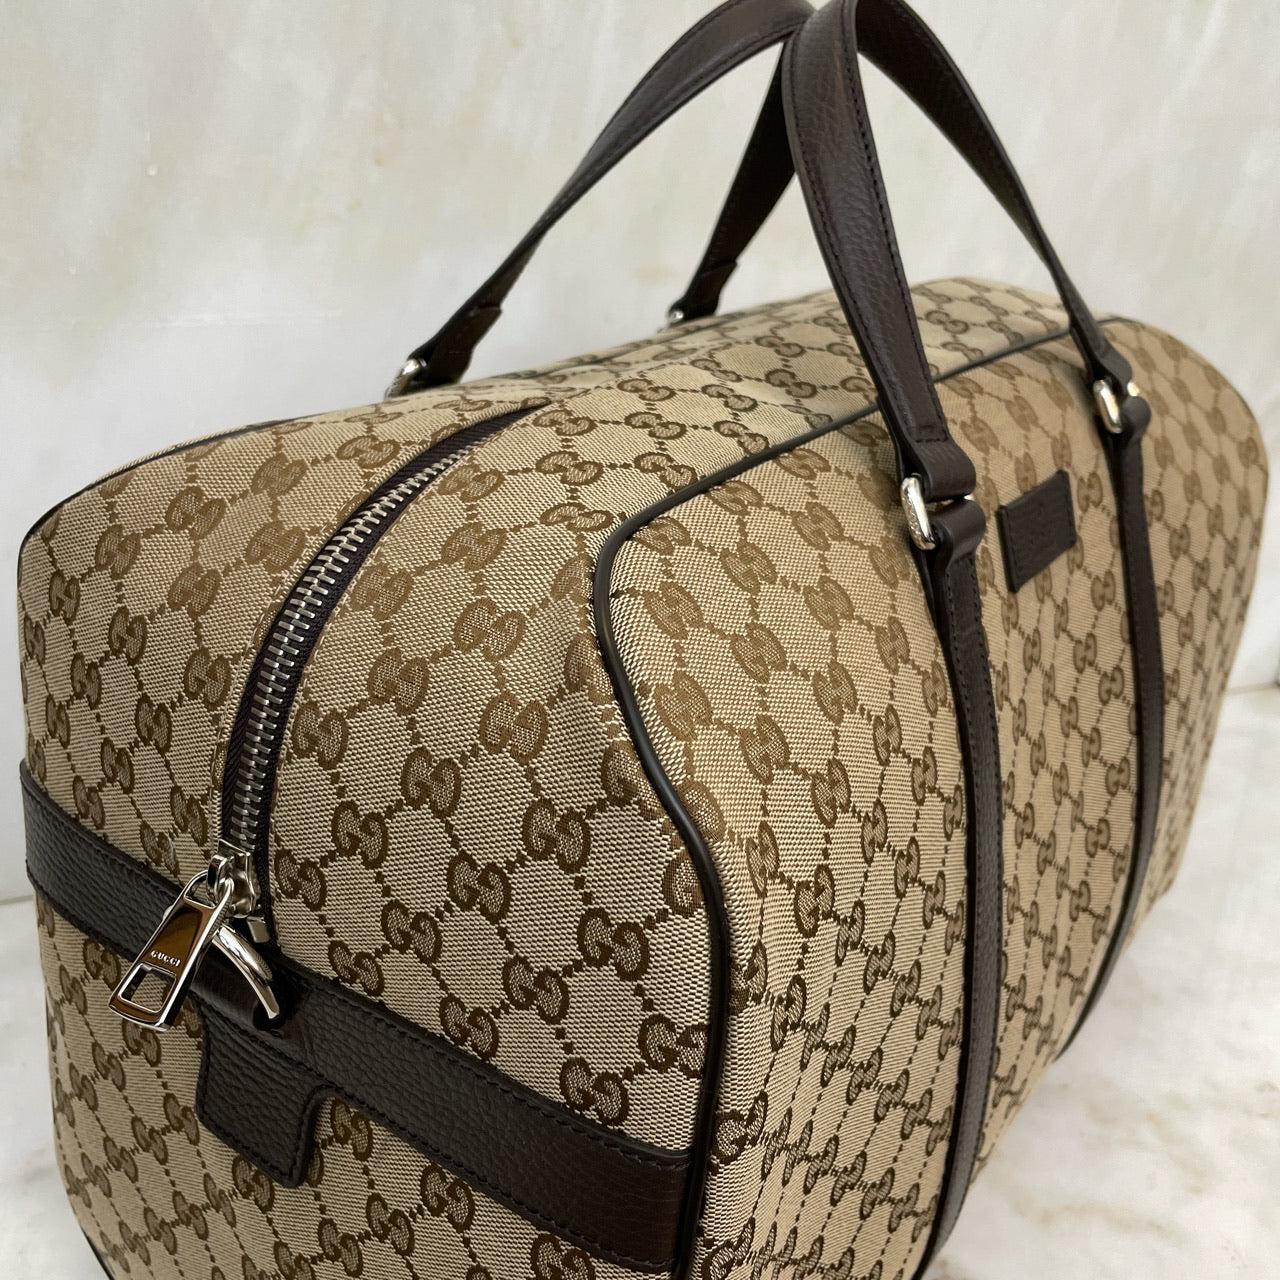 Gucci GG Supreme Canvas Medium Duffle Bag – FUTURO